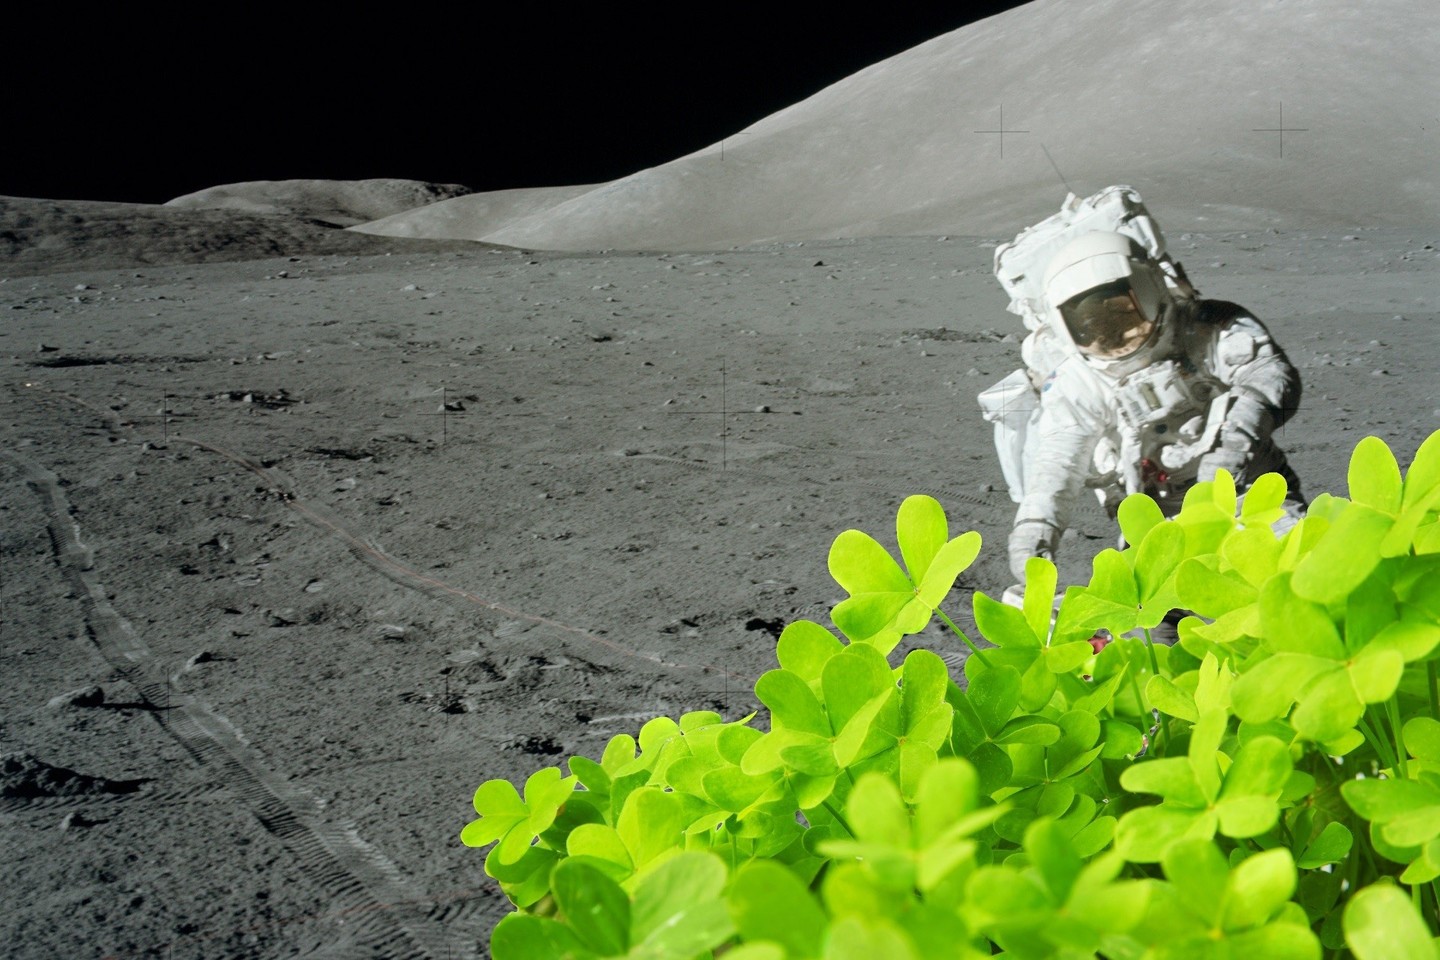 Žmonėms įkūrus nuolatinę bazę Mėnulyje, viena svarbiausių jos užduočių bus apsirūpinti maistu. Taigi lietuvių eksperimentas su dobilais turėtų ir praktinės naudos.<br>NASA ir 123rf nuotr.